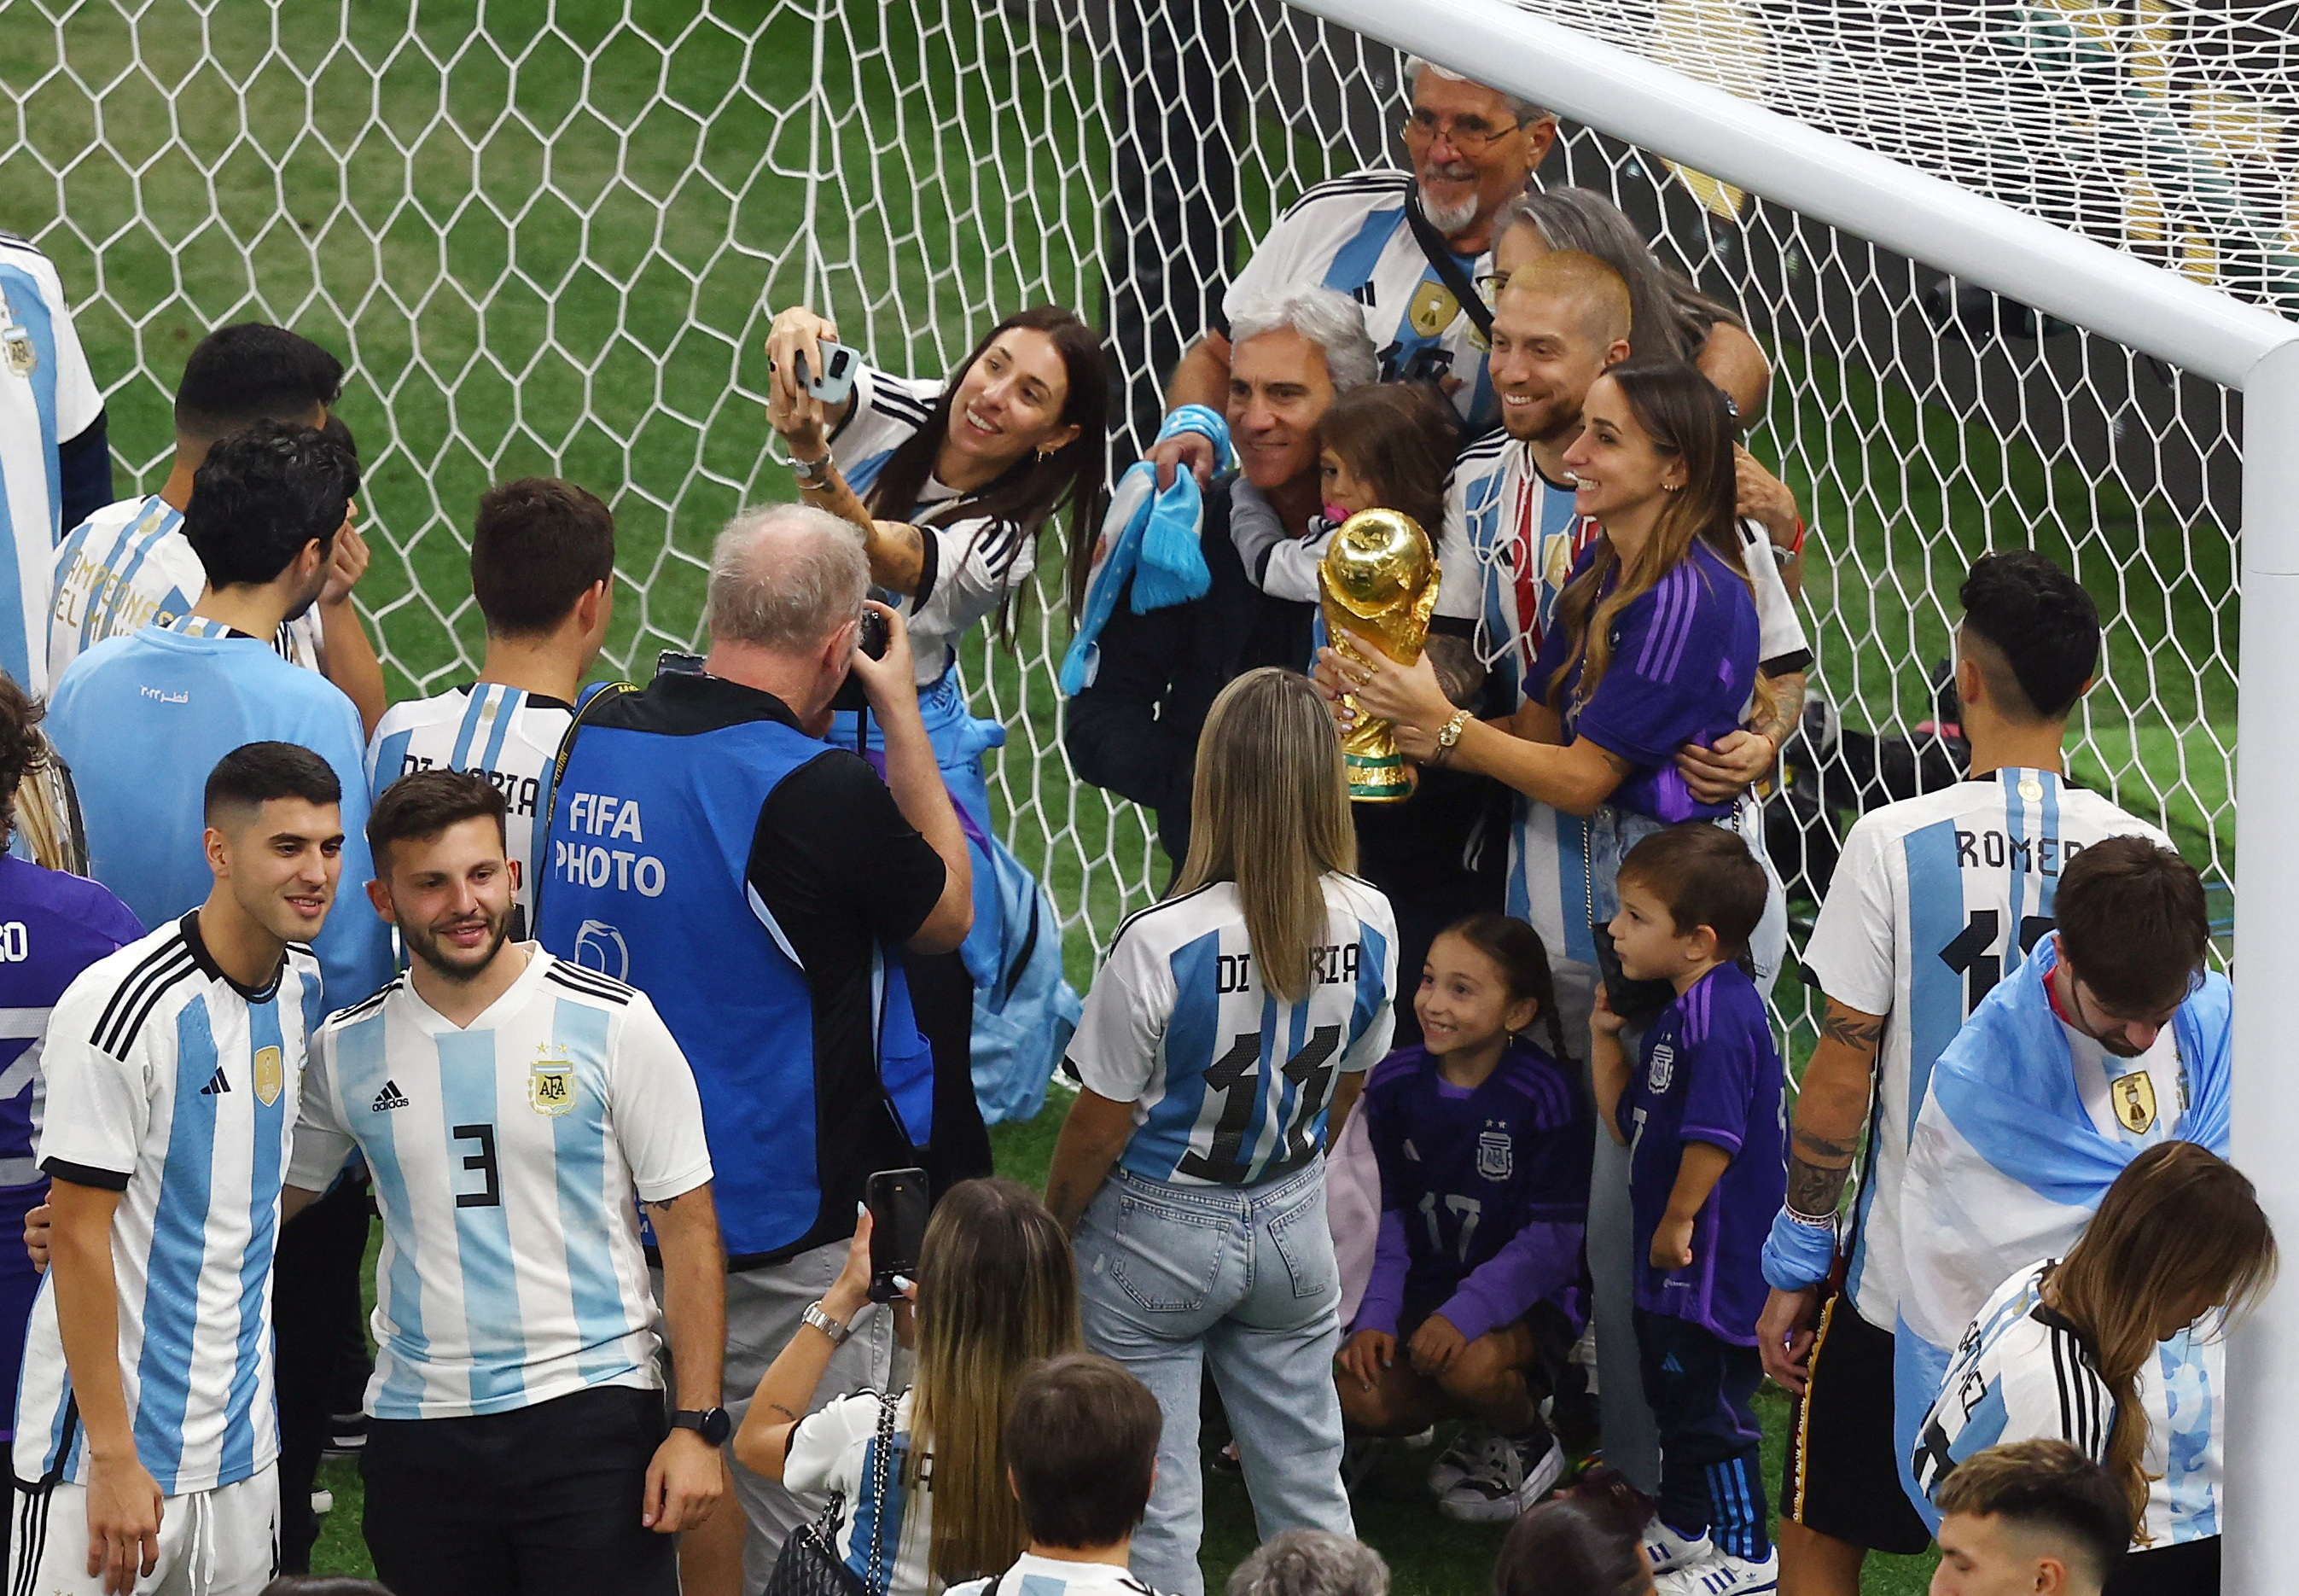 El Papu Gómez con la Copa del Mundo y celebrando con su familia (REUTERS/Paul Childs)